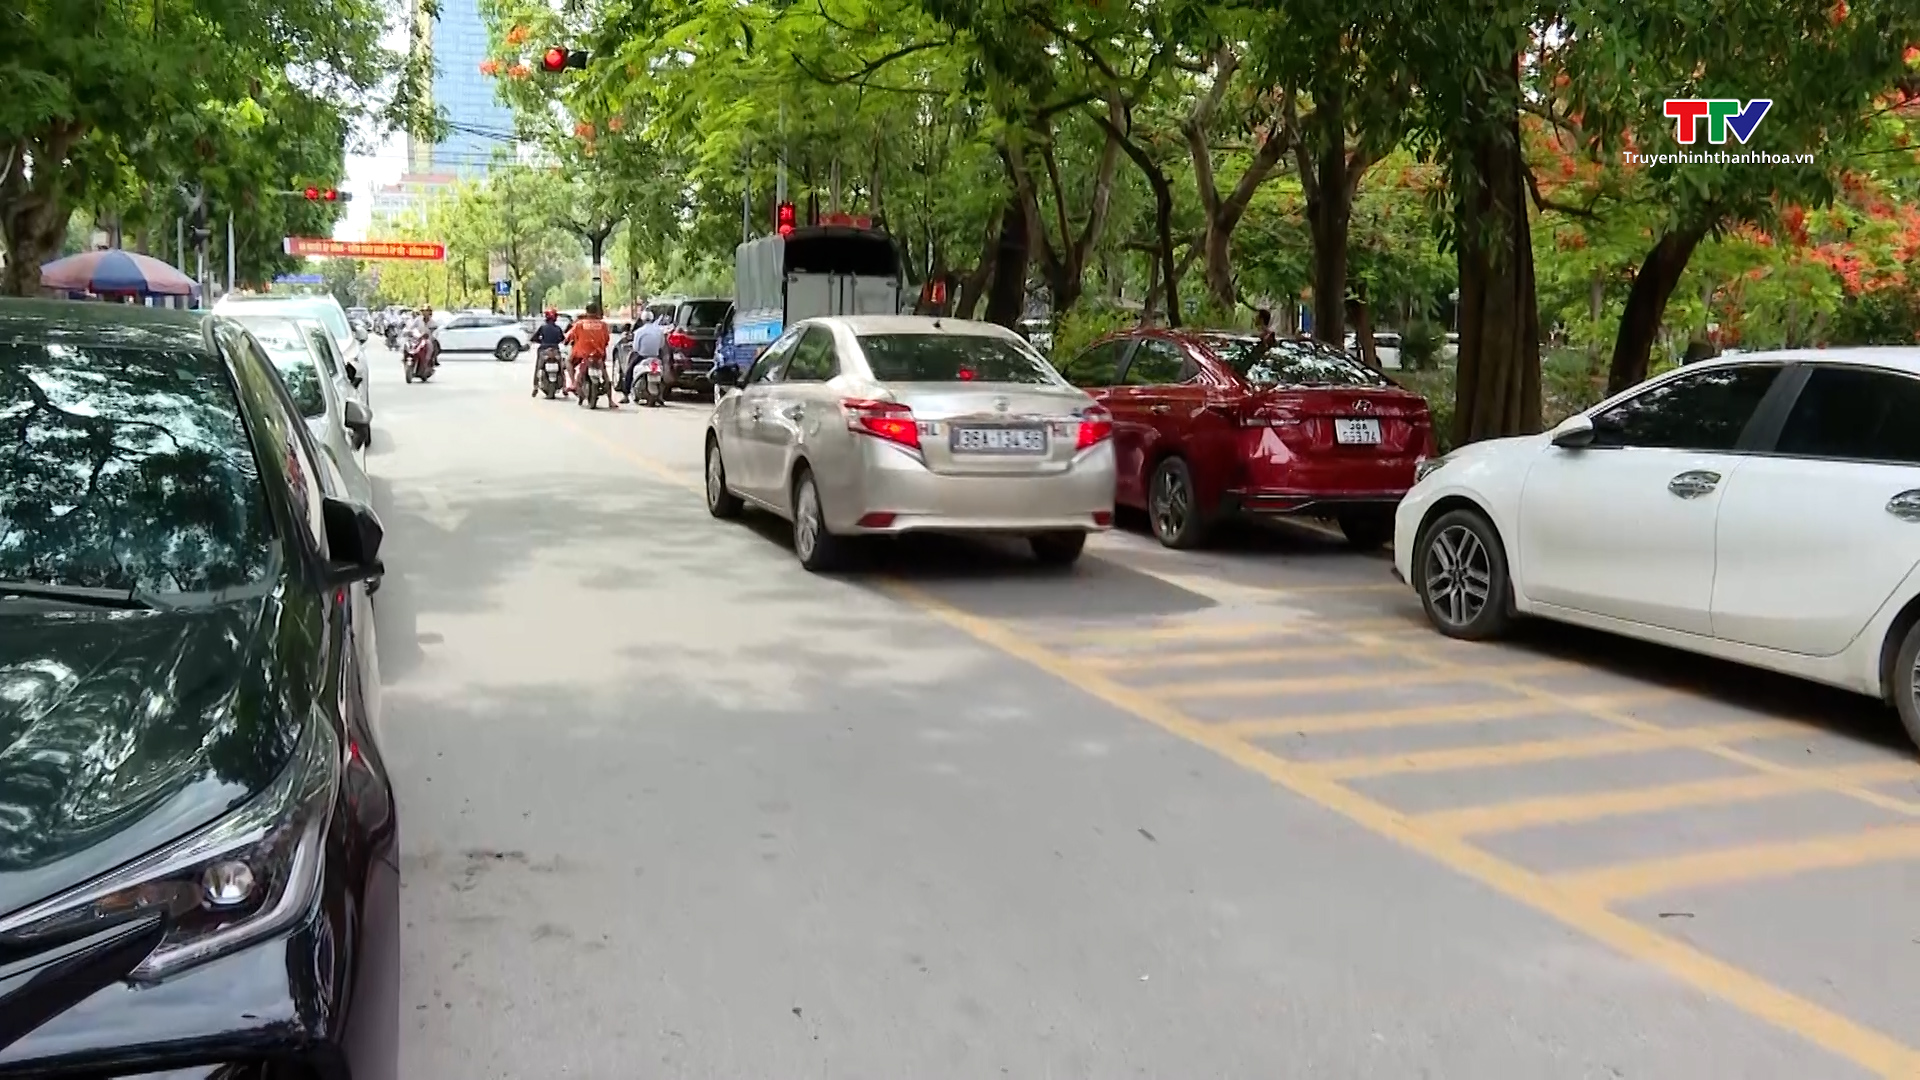 Cần sớm hoàn thiện hệ thống biển báo giao thông tại Dự án phố đi bộ thành phố Thanh Hóa - Ảnh 1.